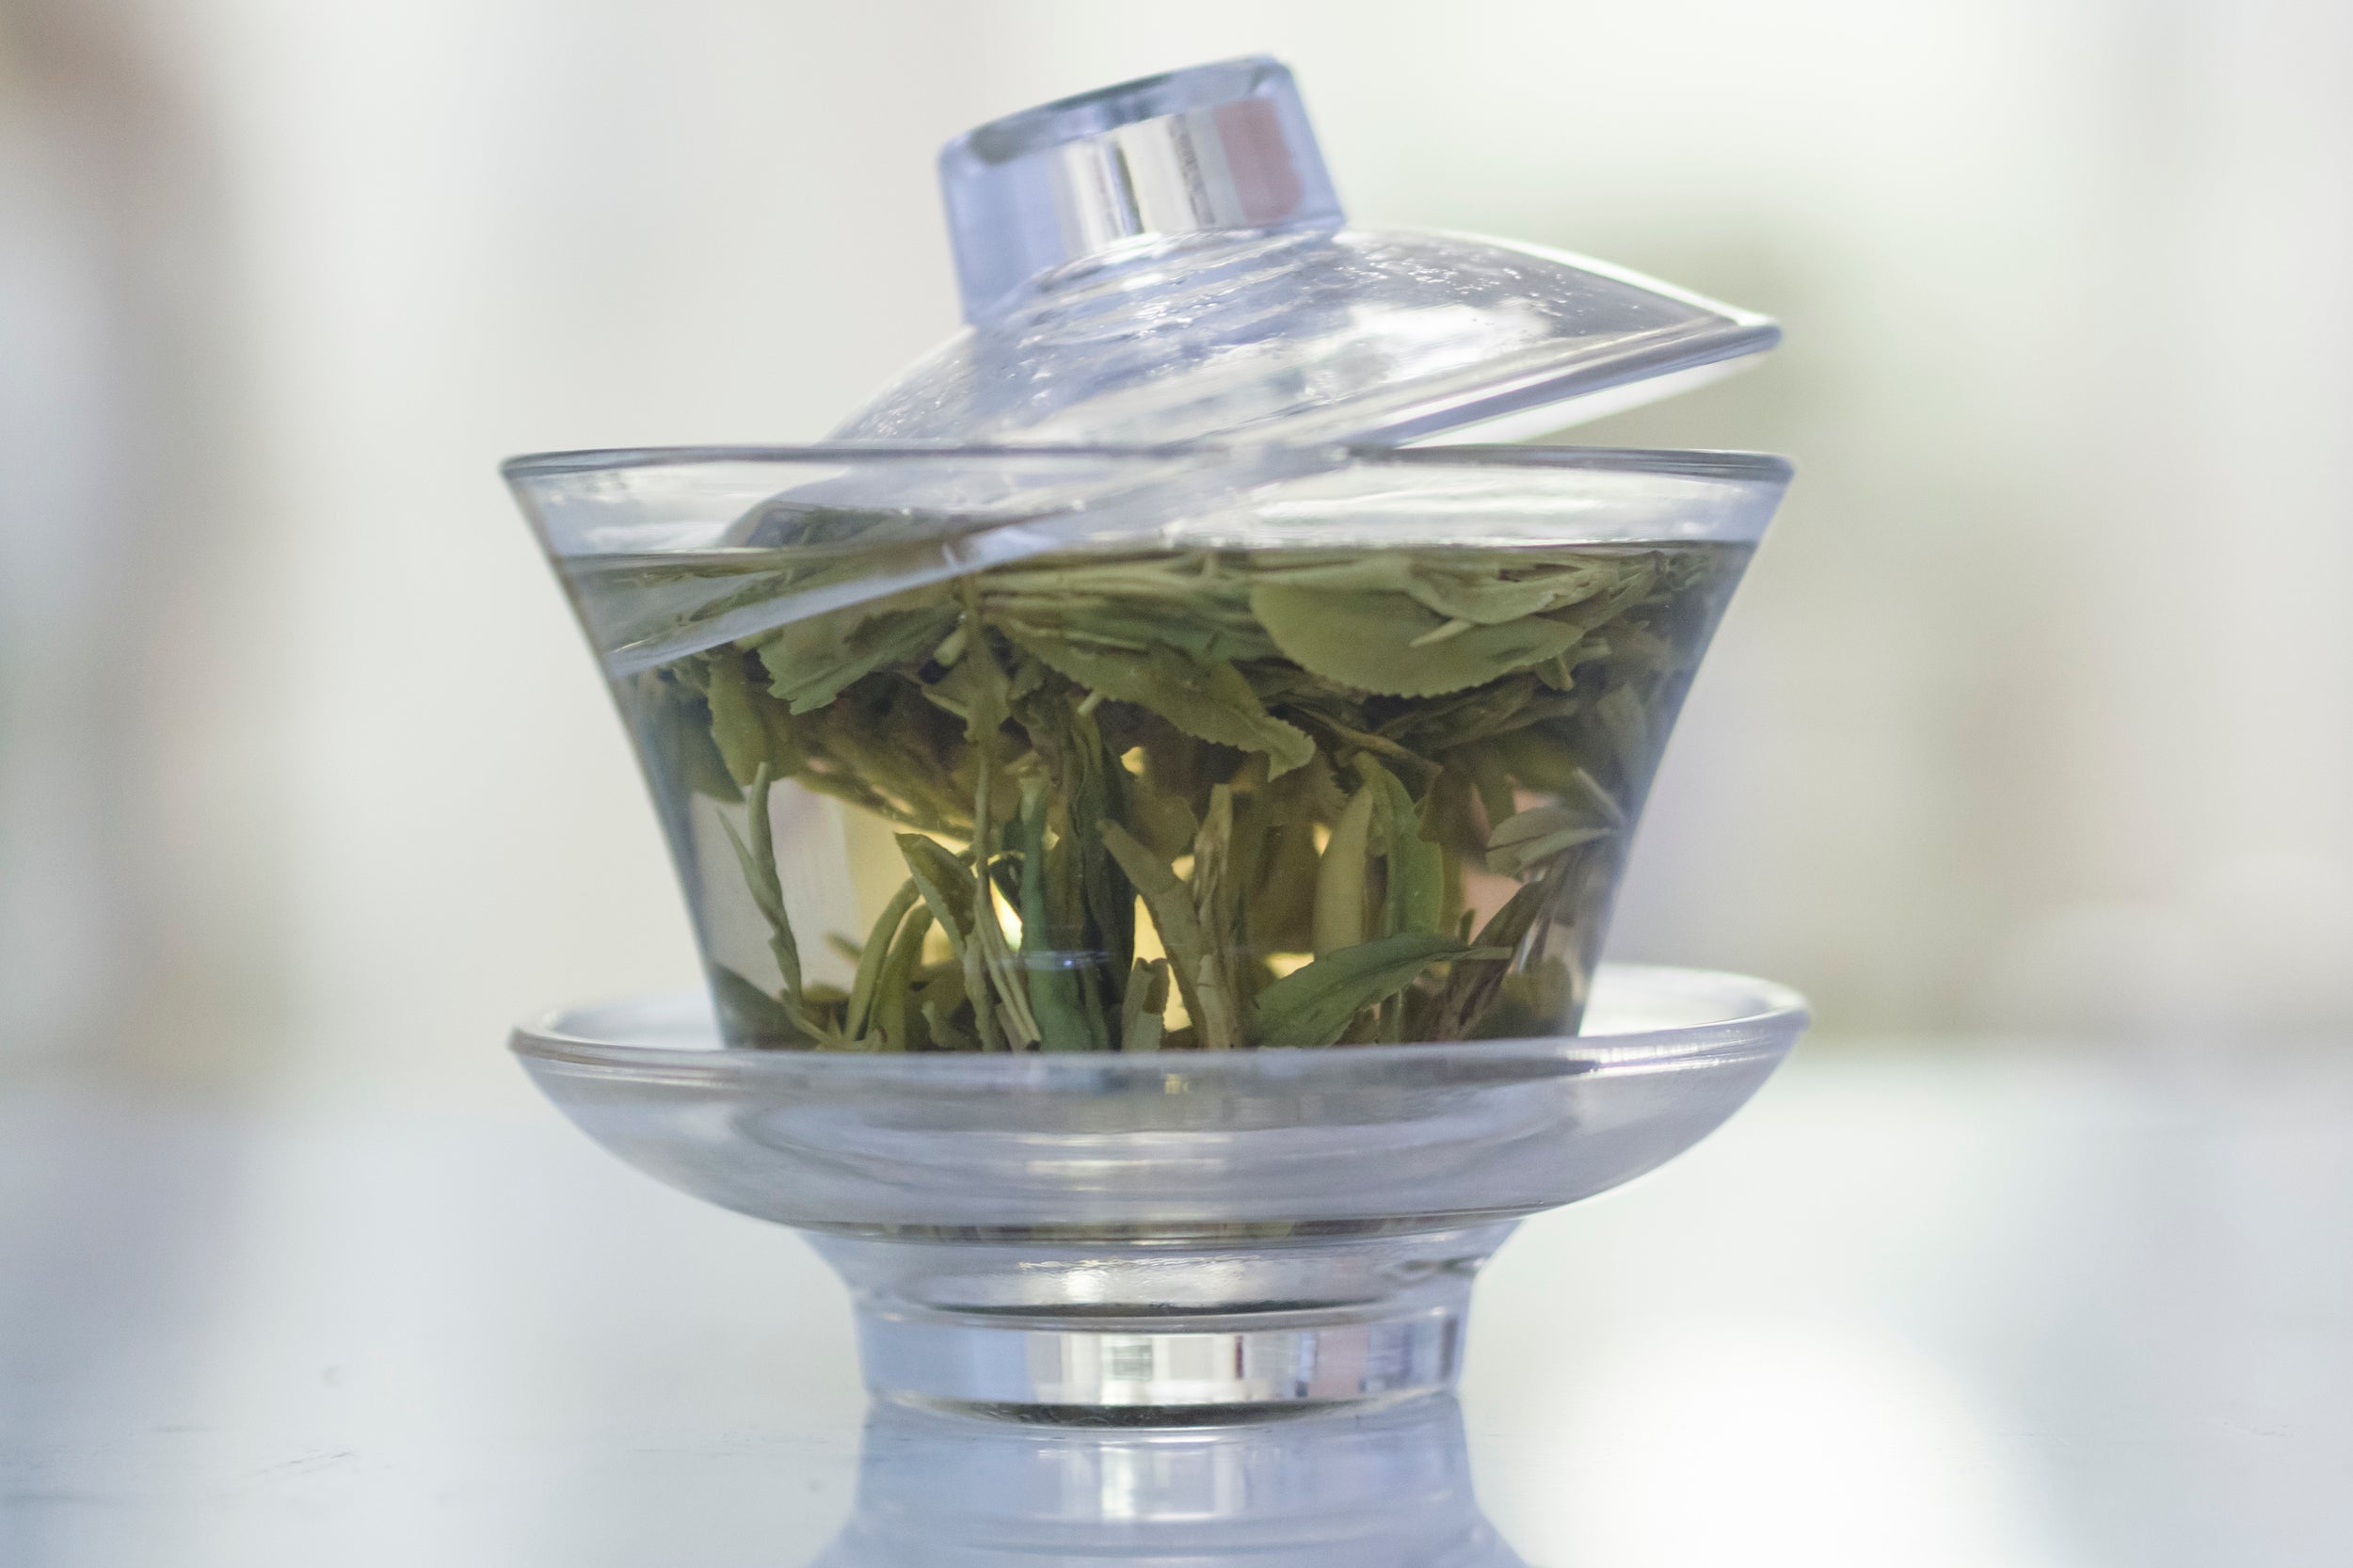 Tea leaves brewing in gaiwan.